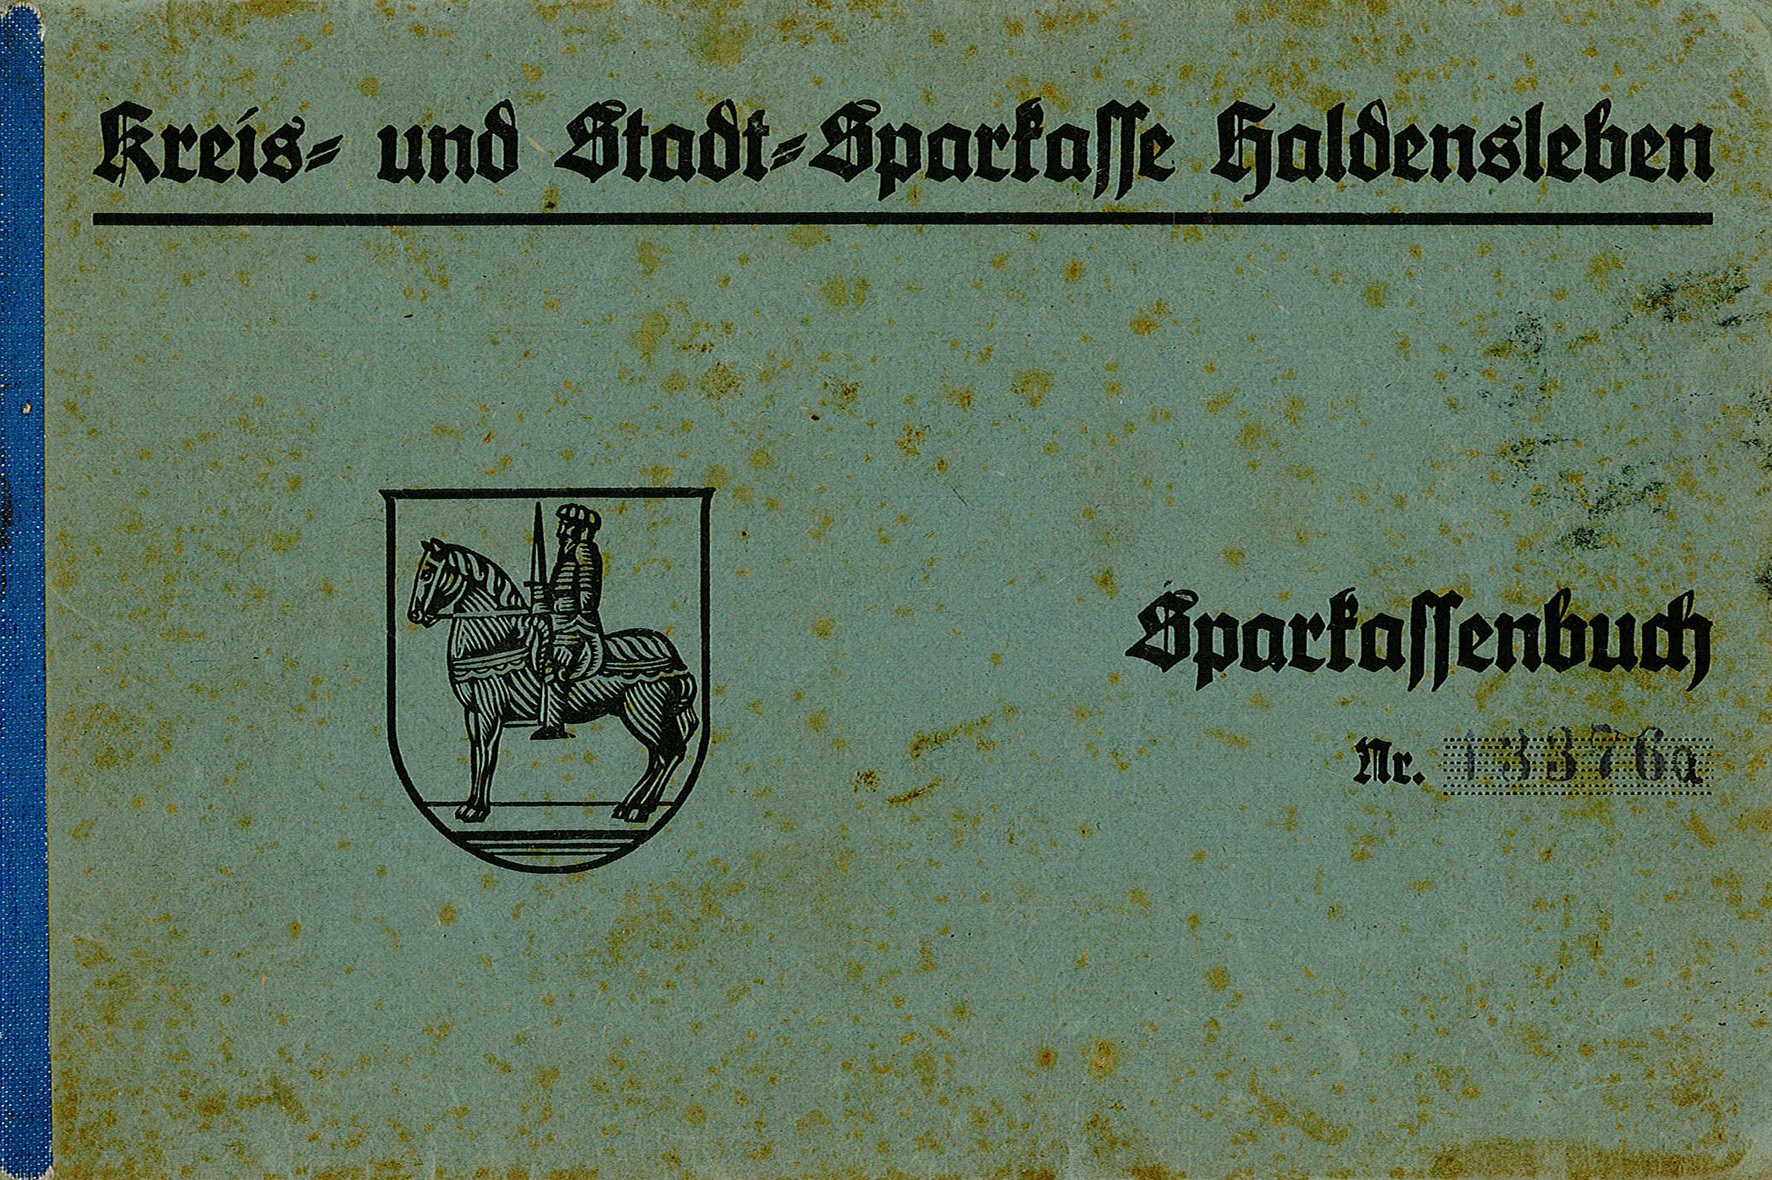 Sparkassenbuch von Meta Kraft (geborene Dürrmann), 1943/1944 (Museum Wolmirstedt RR-F)